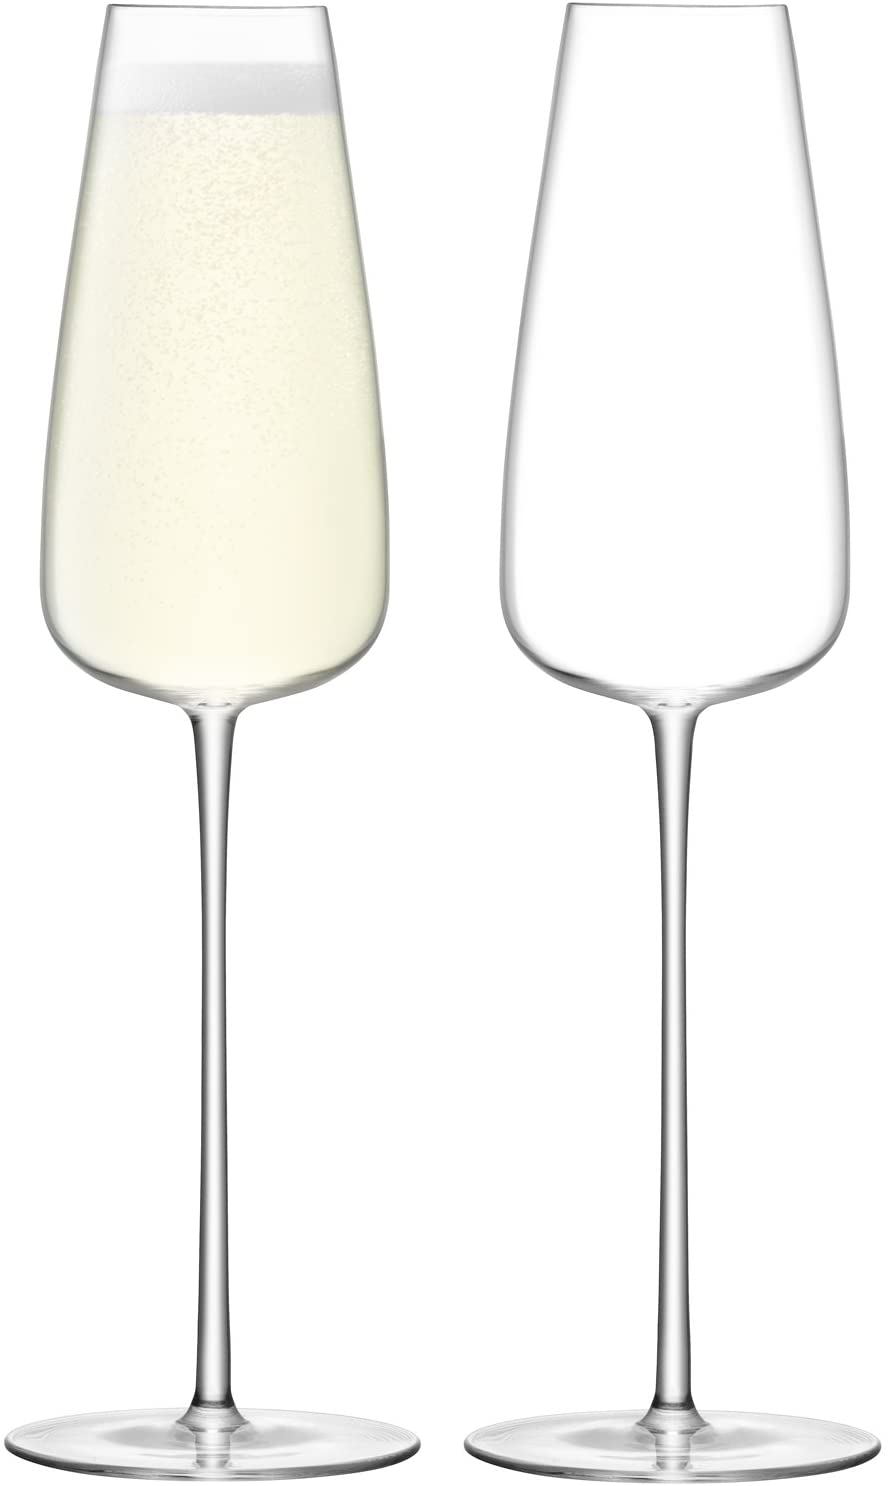 LSA International Wine Flute Glass 330 ml Clear x 2, 10.7 x 10.7 x 255 mm